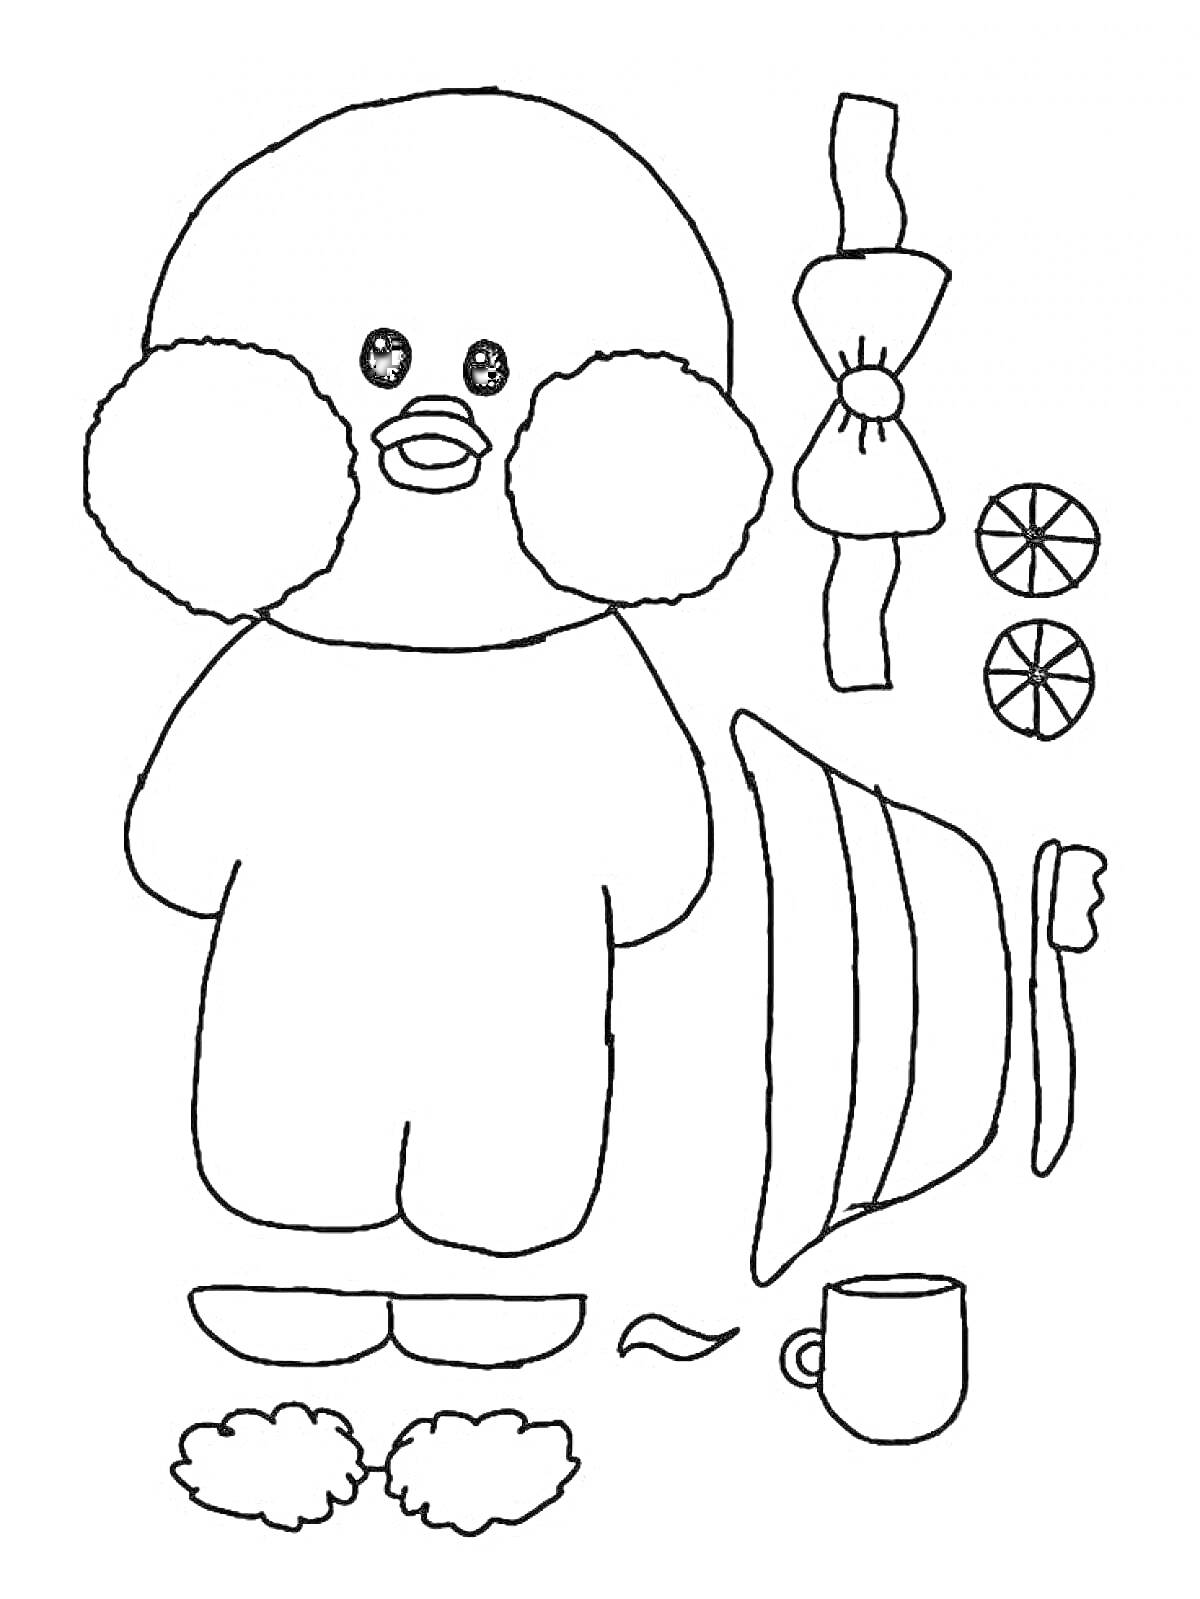 Раскраска Утка Лалафанфан с мандаринами, кружкой, бантом, шапкой и меховыми шариками